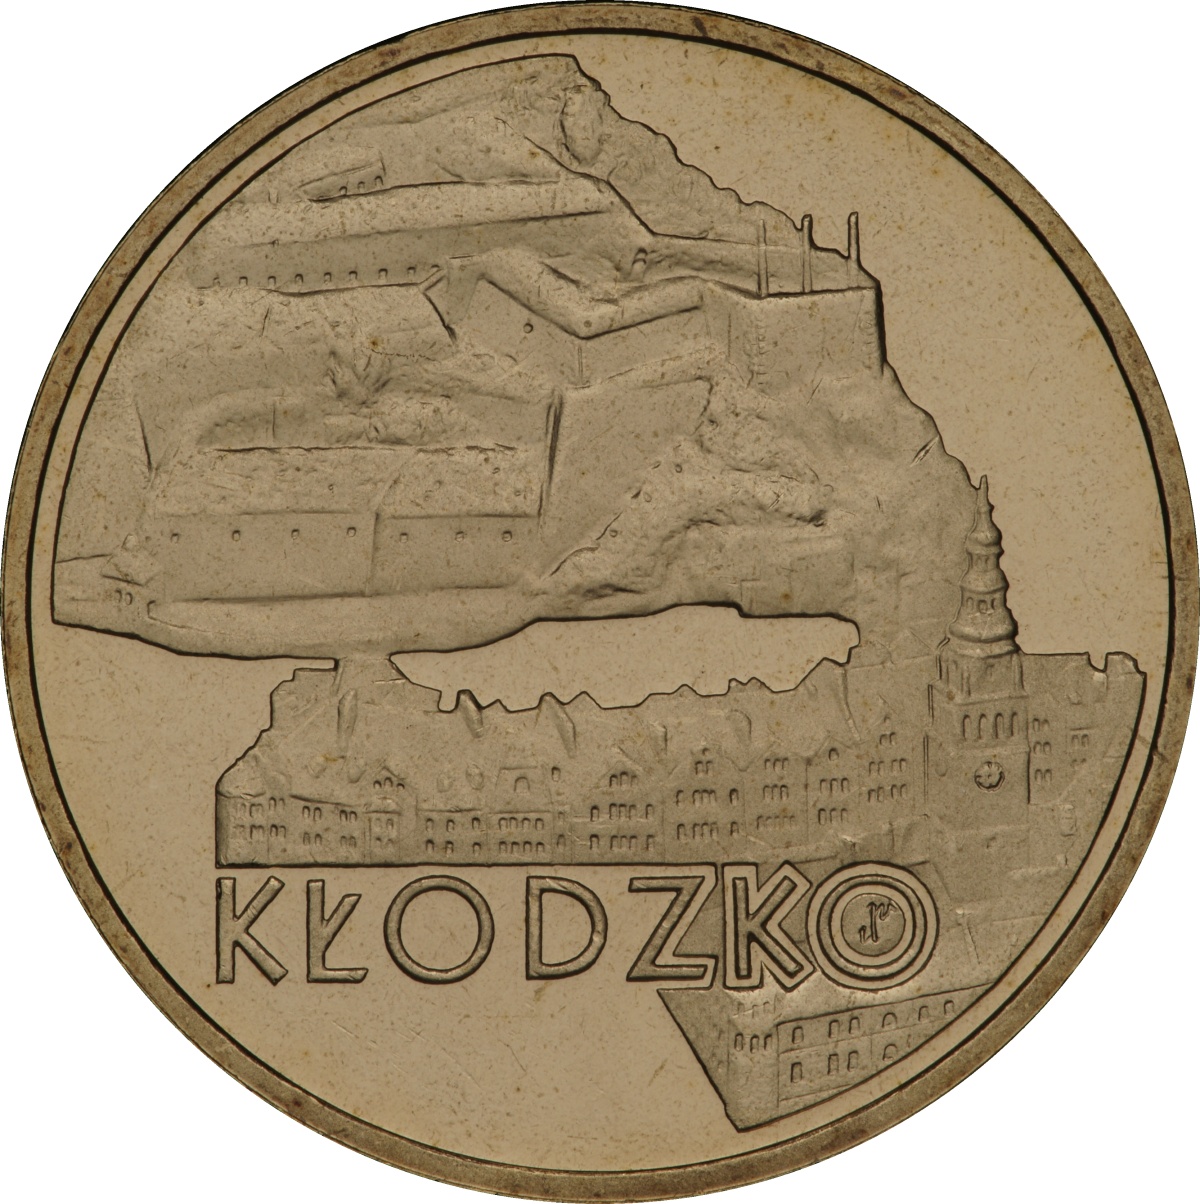 2zl-klodzko-rewers-monety